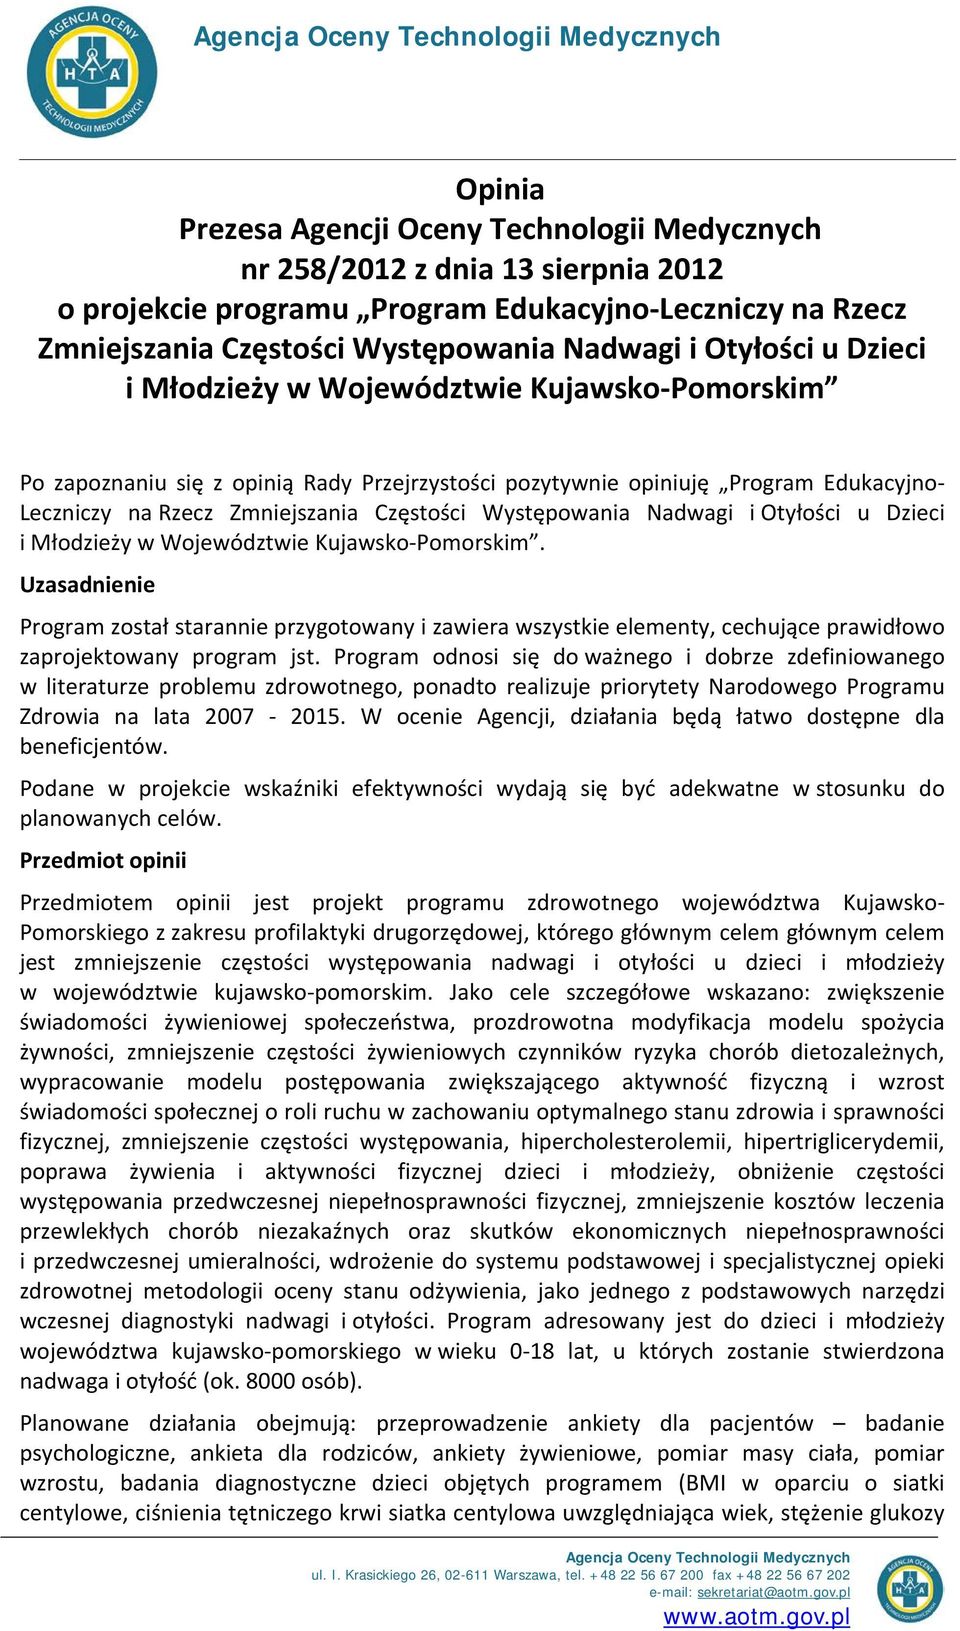 Rzecz Zmniejszania Częstości Występowania Nadwagi i Otyłości u Dzieci i Młodzieży w Województwie Kujawsko-Pomorskim.